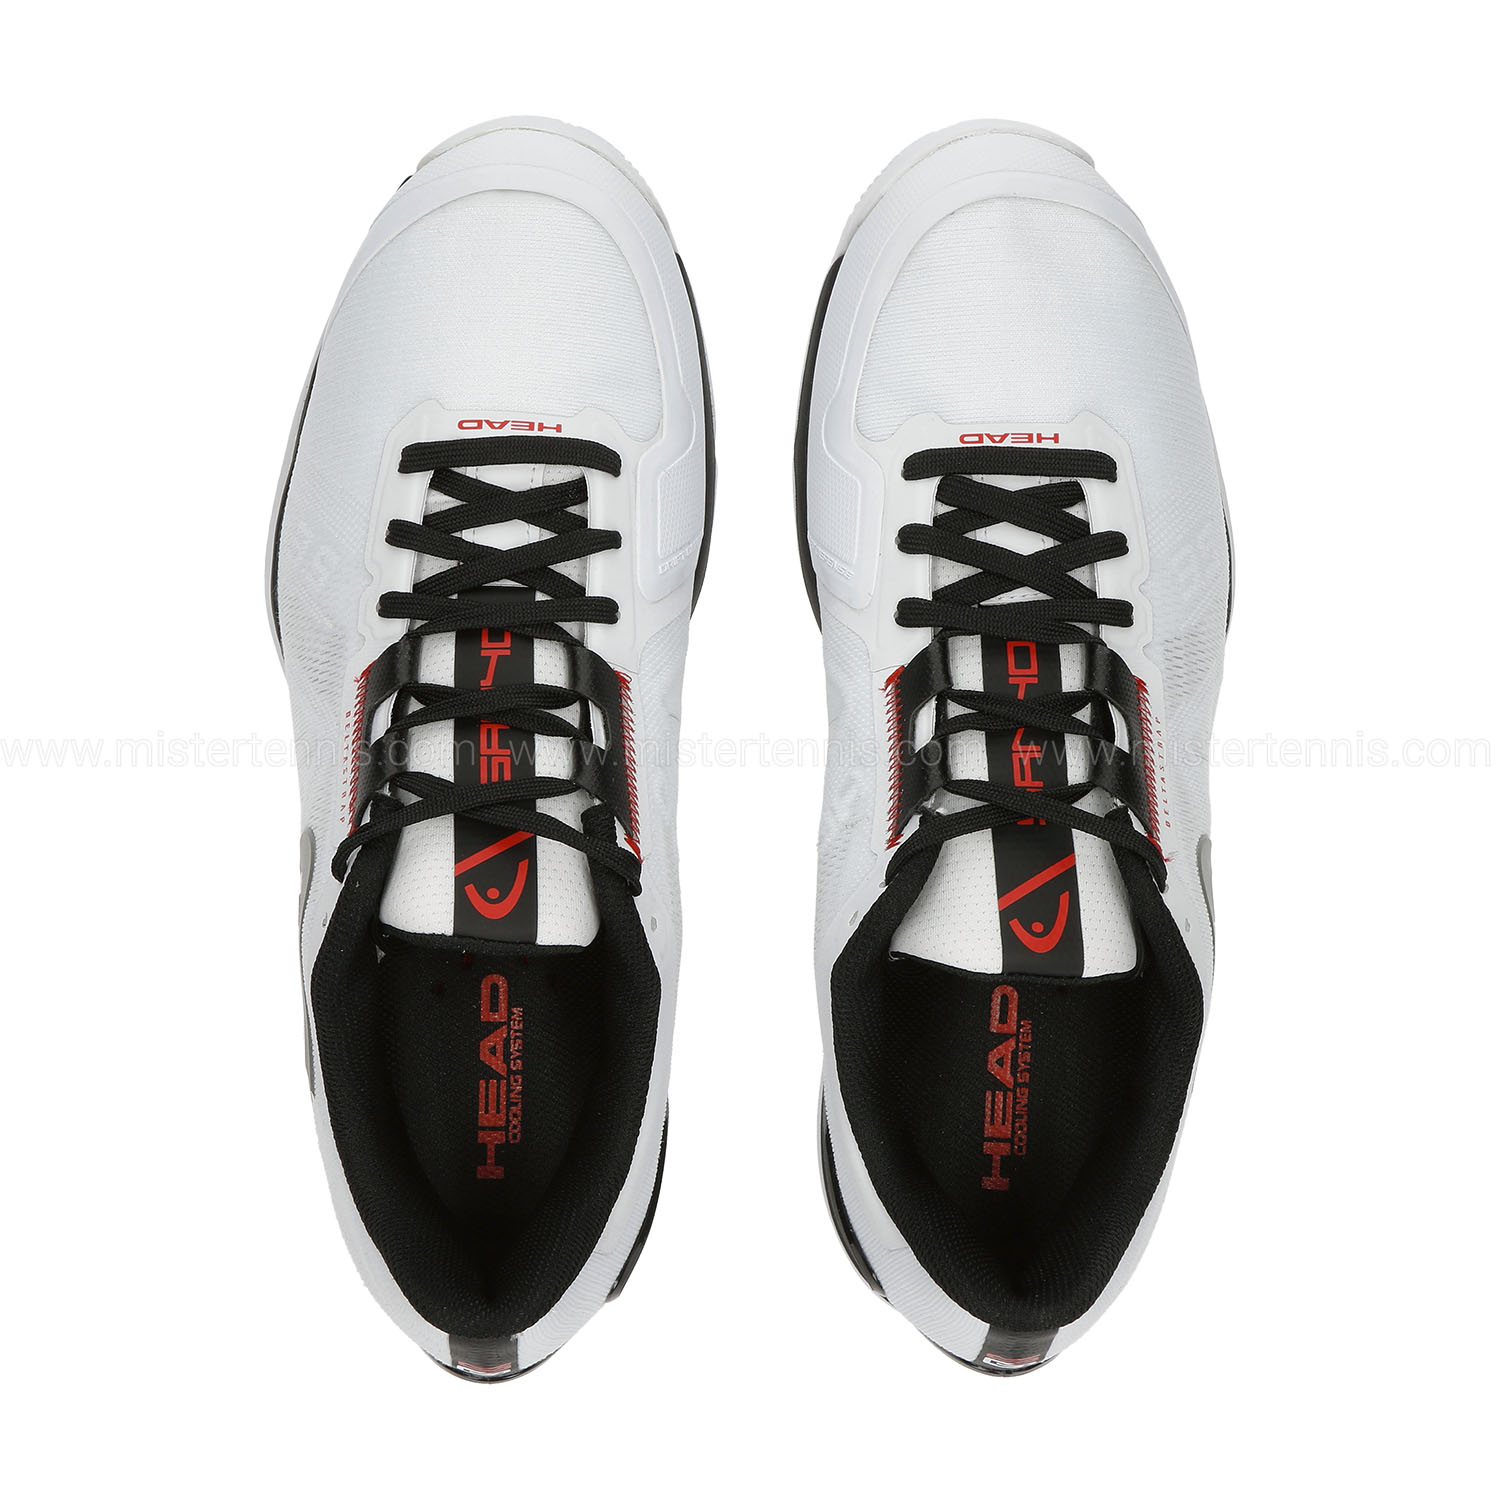 Fielmente Compañero éxito Head Sprint Pro 3.5 Sanyo Men's Padel Shoes - White/Black